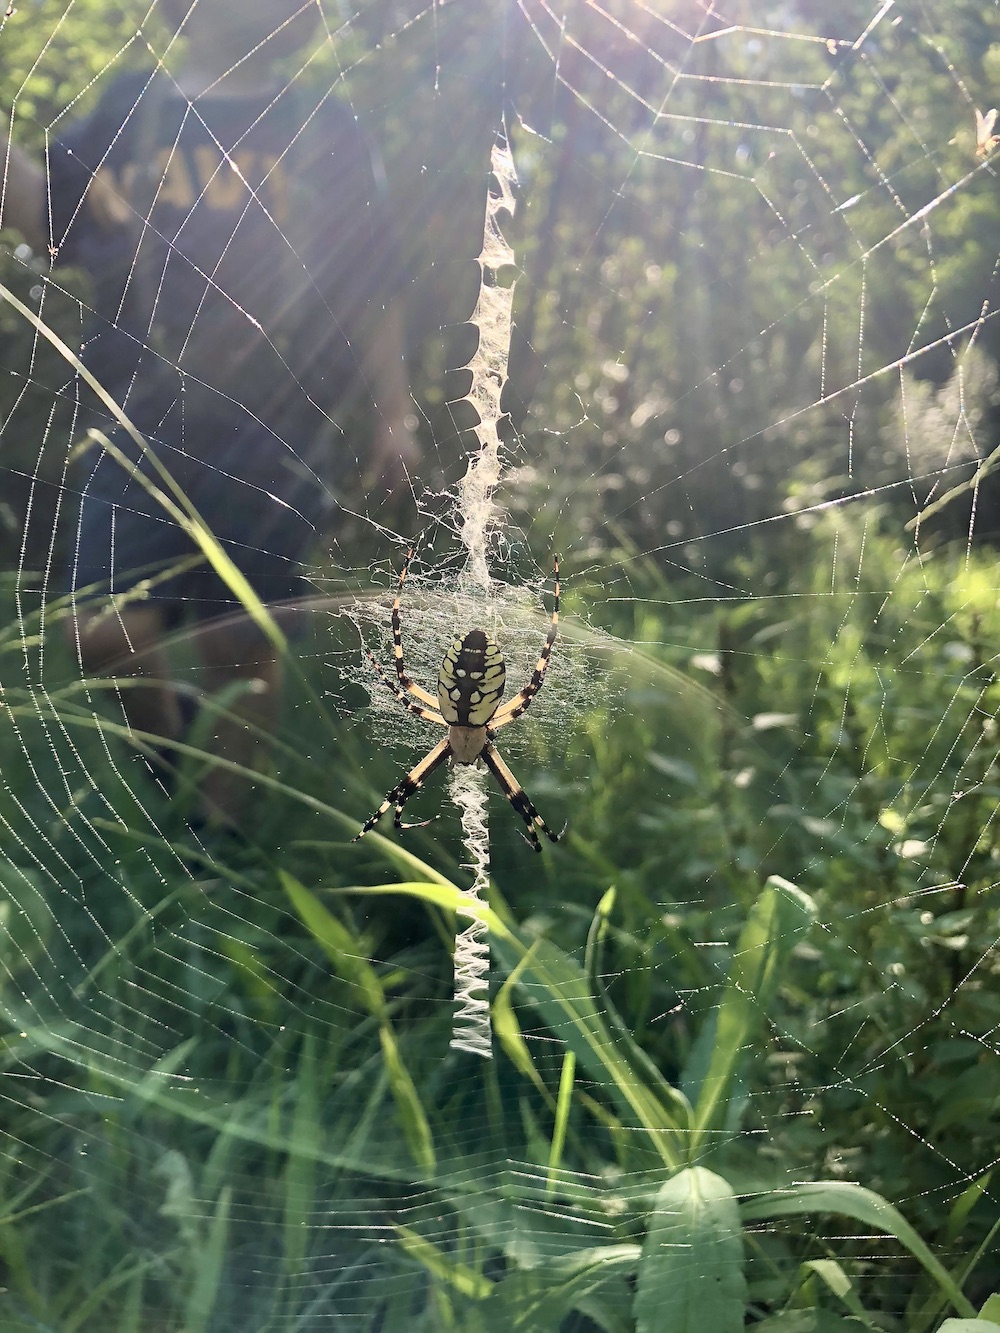 Yellow Garden Spider Live